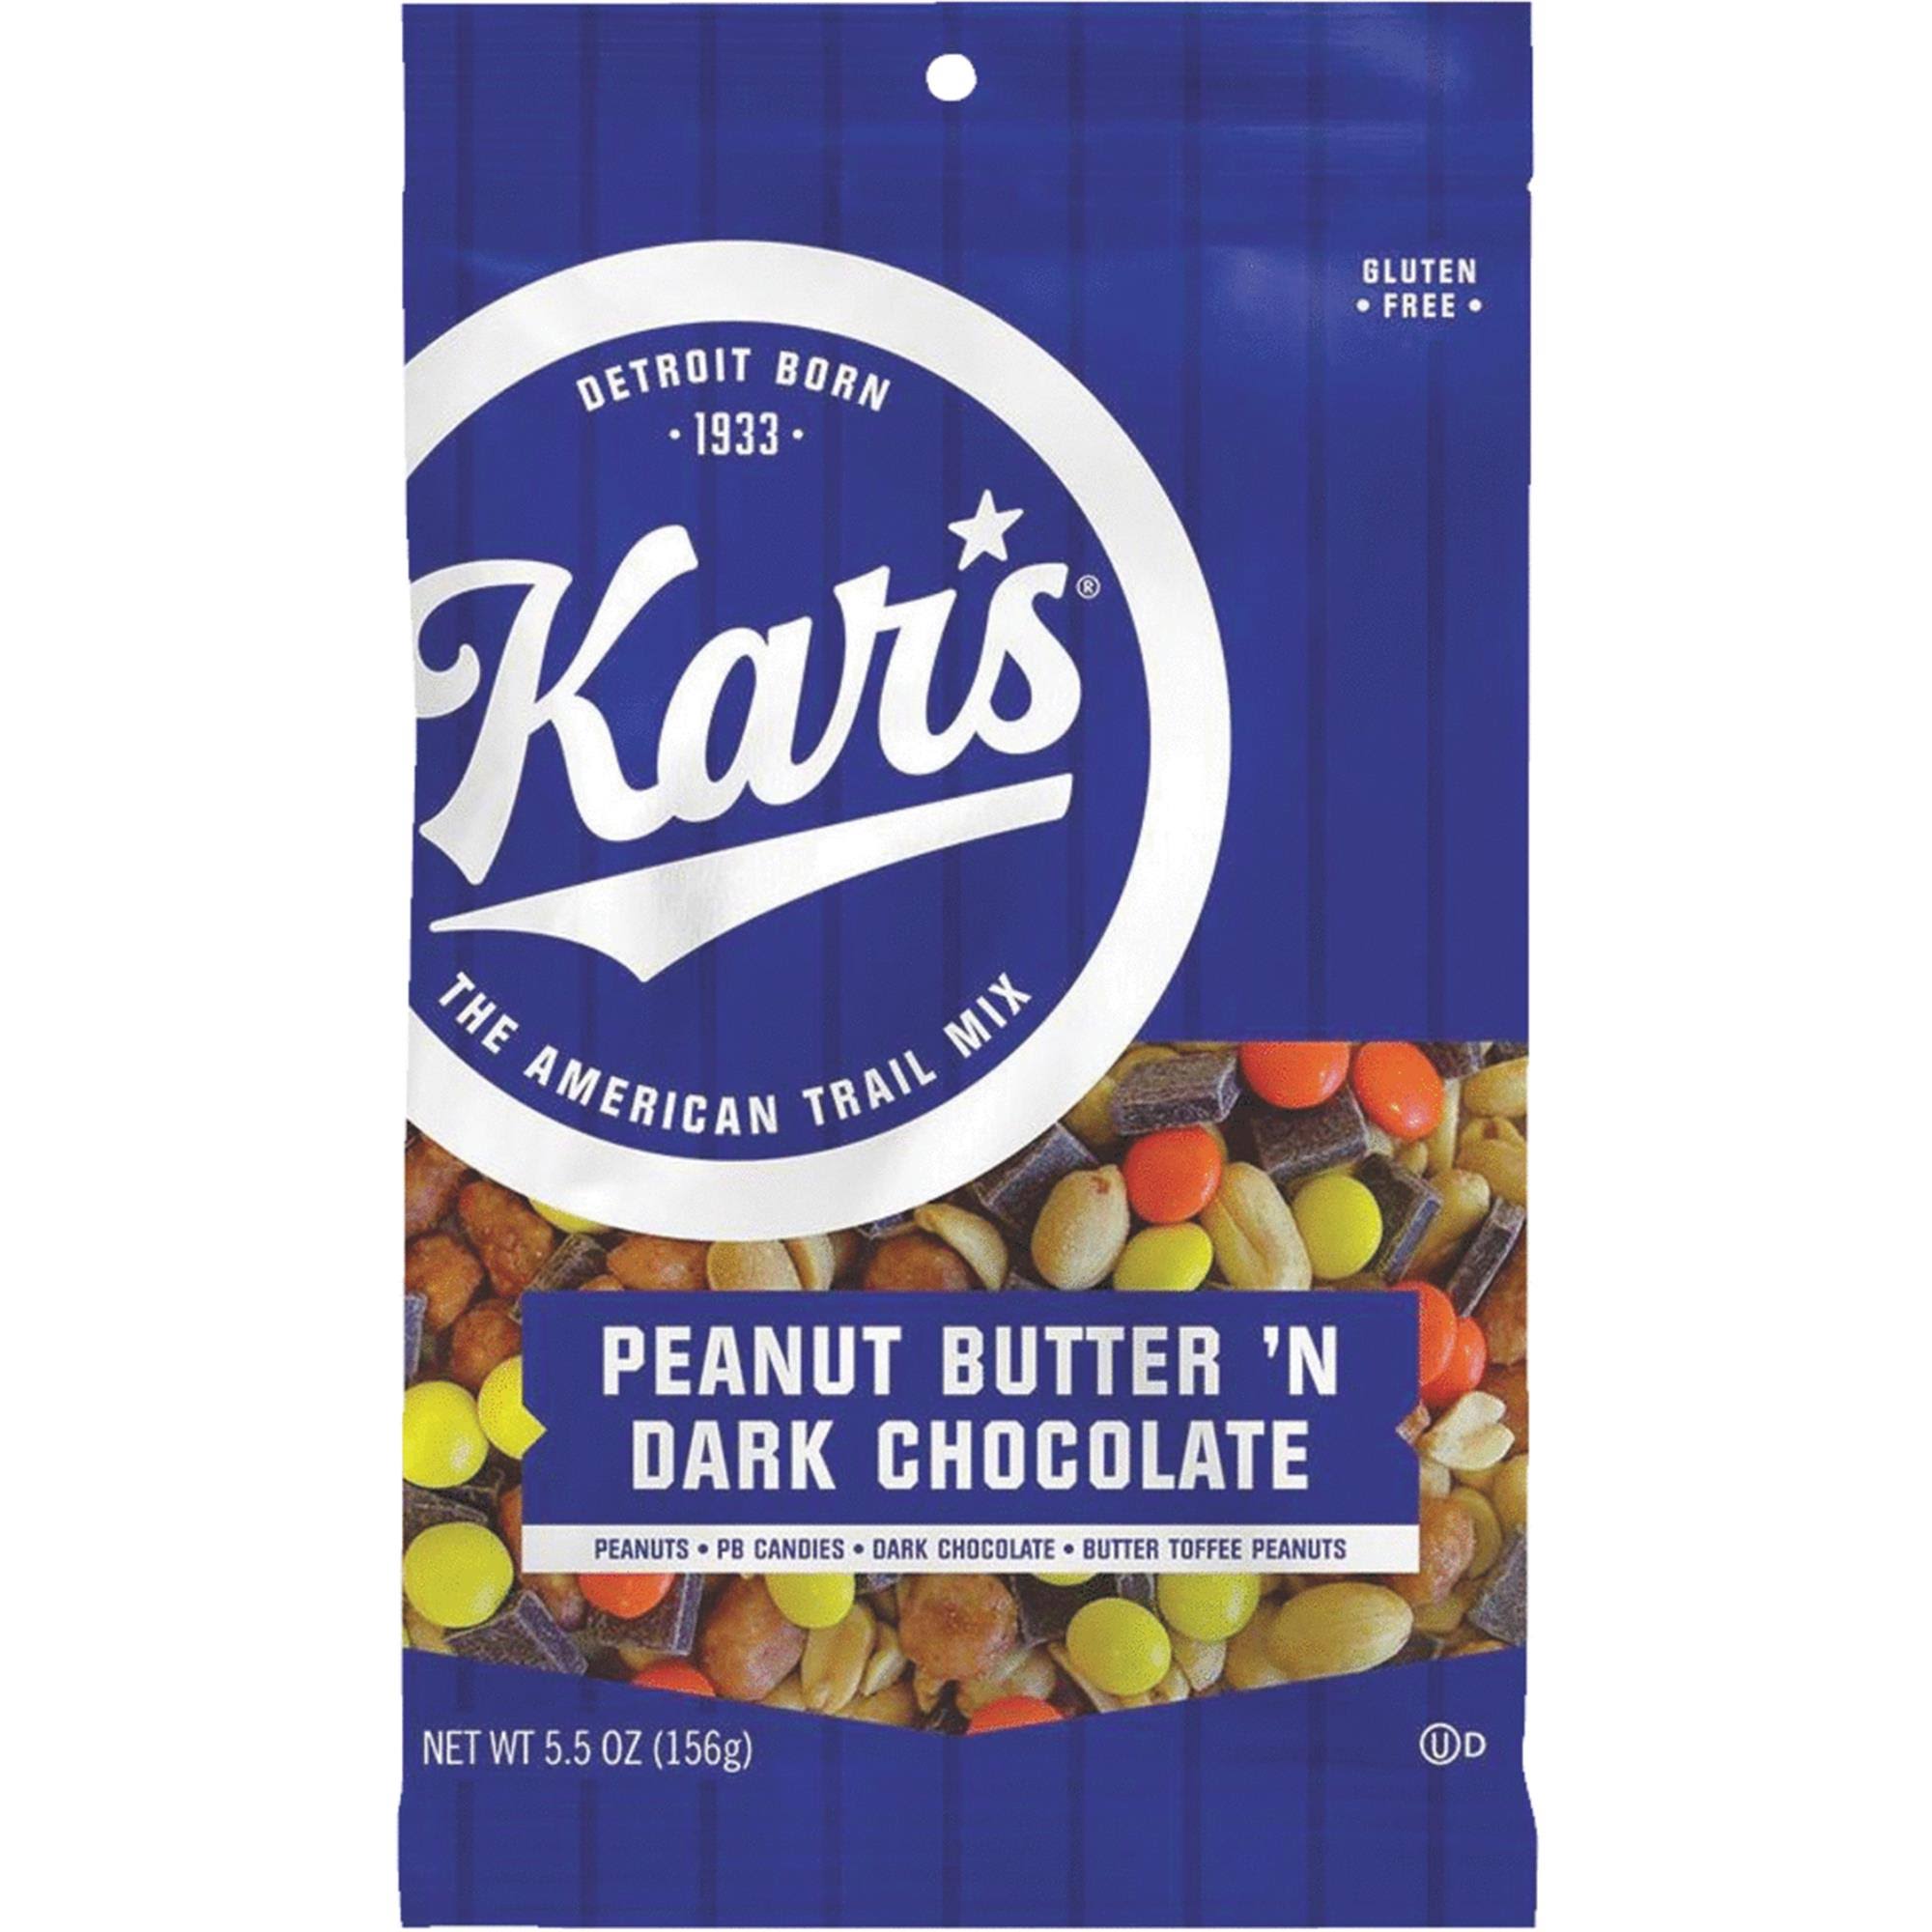 Kars Trail Mix, Peanut Butter 'N Dark Chocolate - 5.5 oz